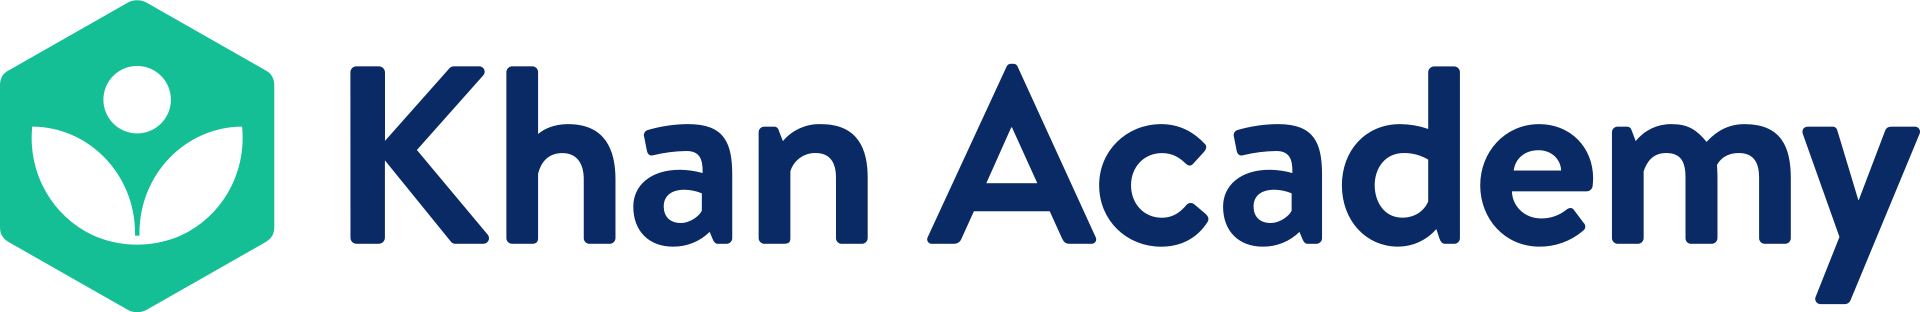 1920px Khan Academy logo 2018.svg